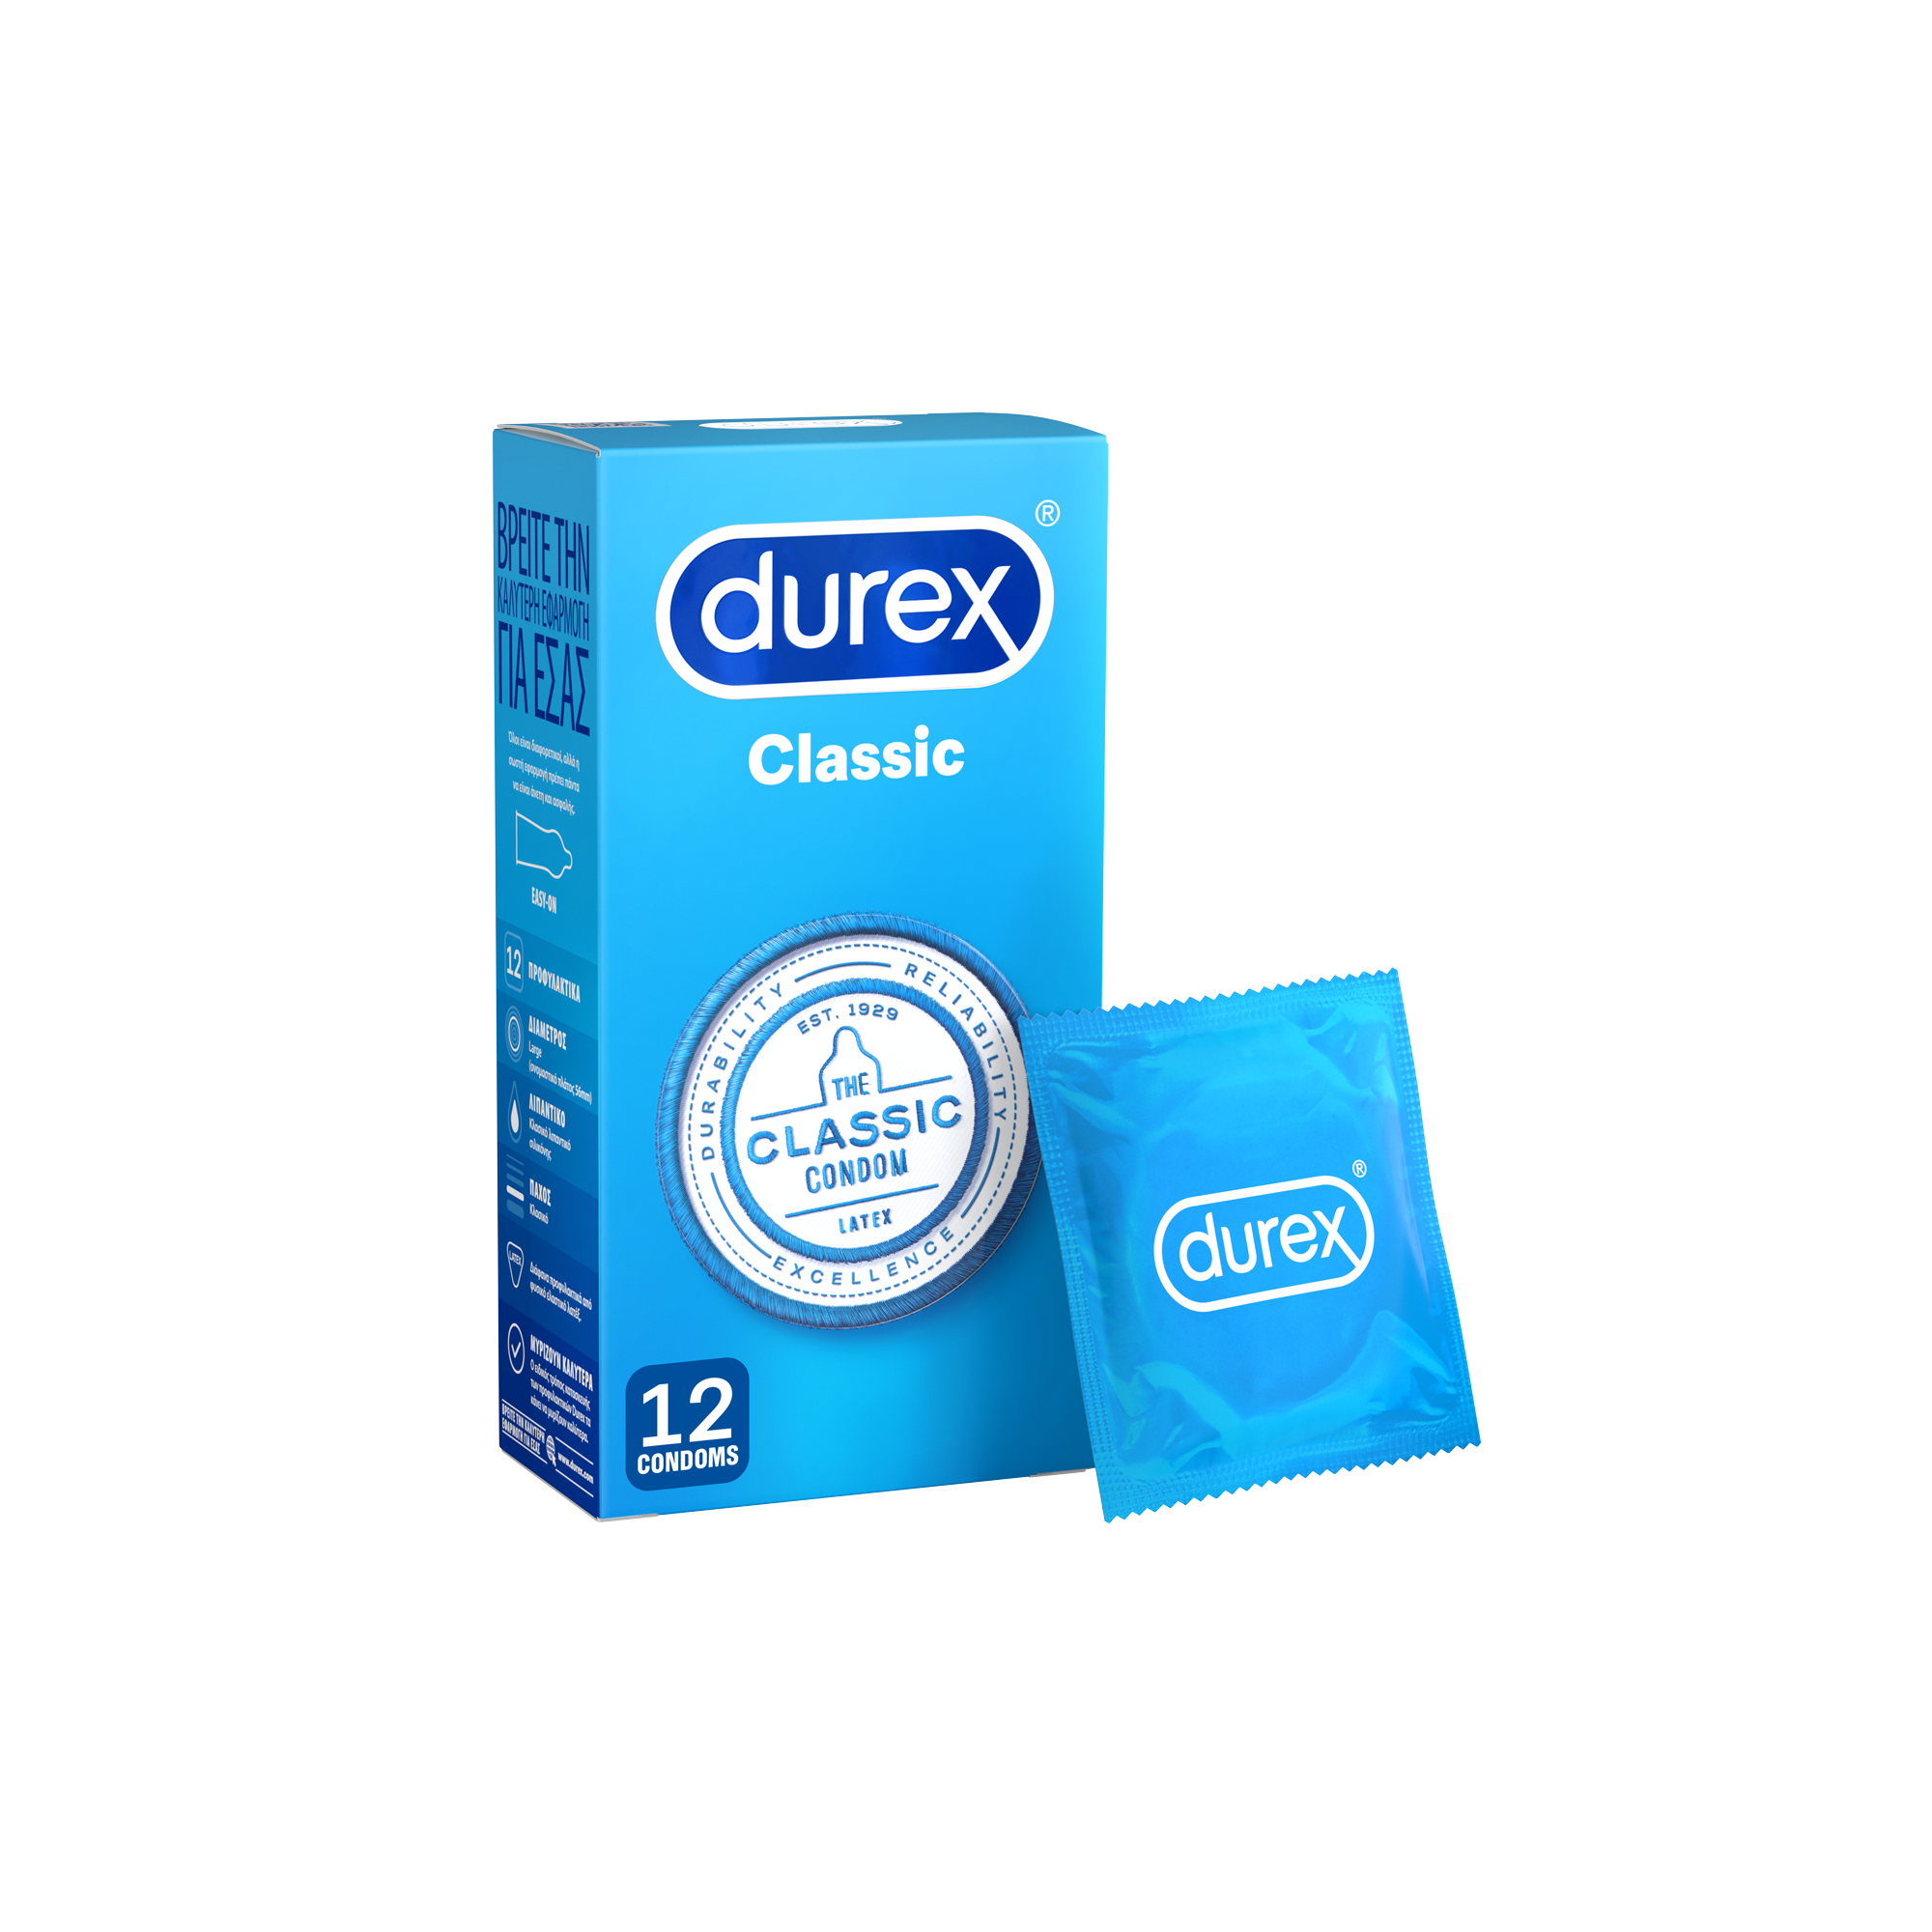 Durex Originals Condoms